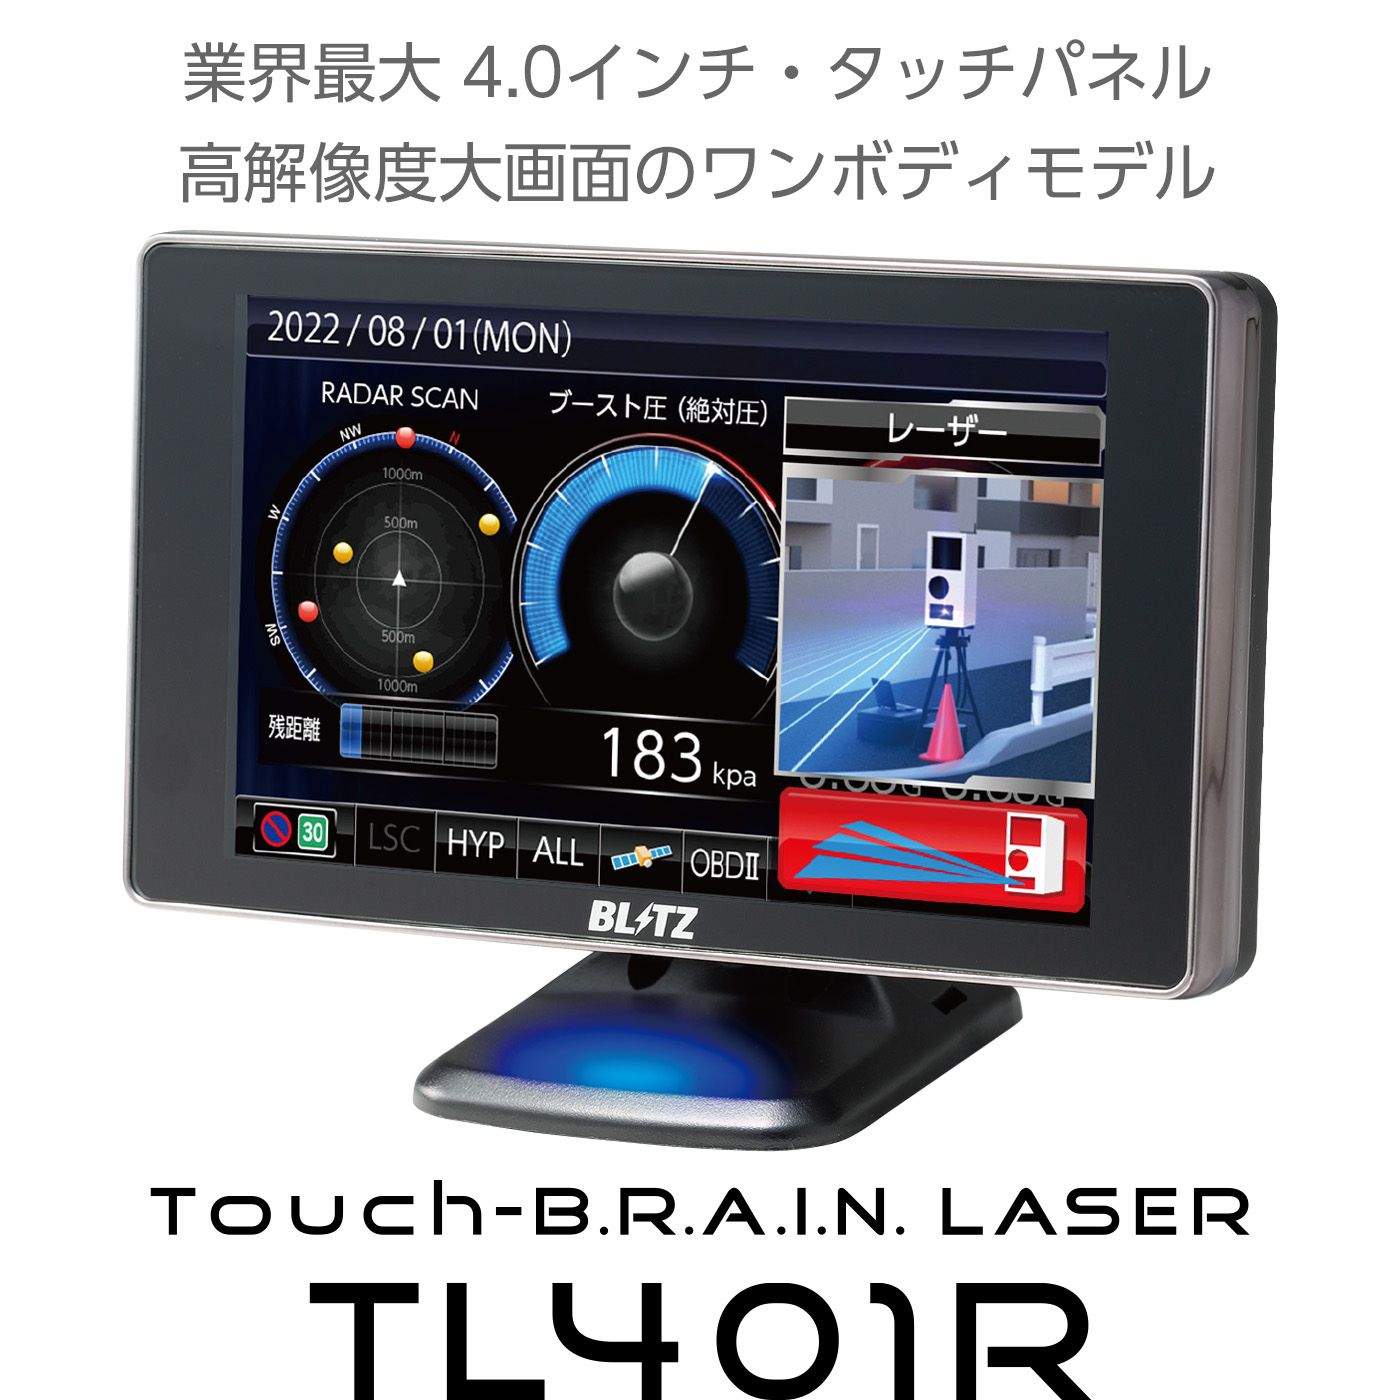 Touch-B.R.A.I.N. LASER 401R